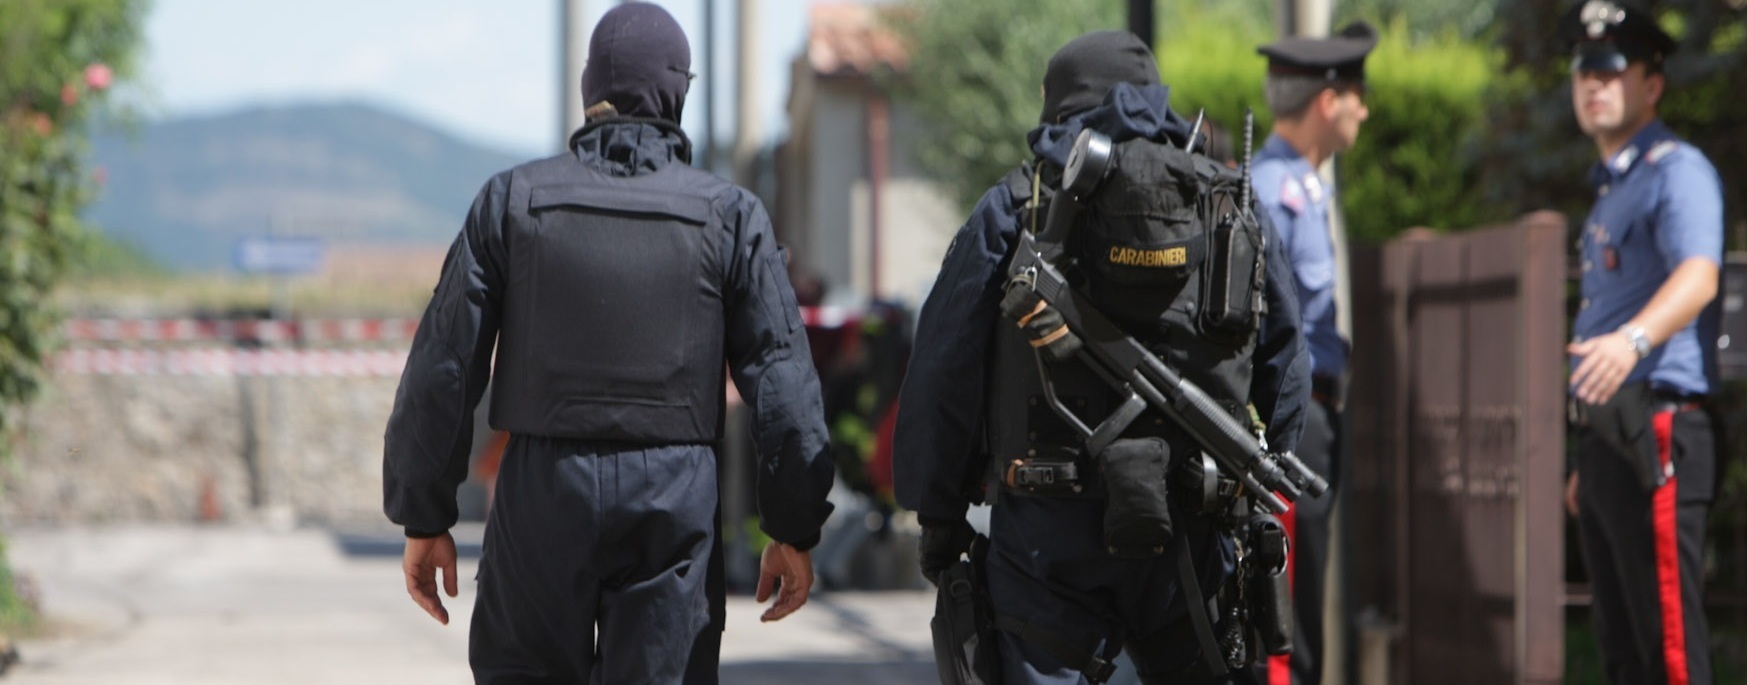 Σαλβίνι: «Στέλνω τους καραμπινιέρους στα σύνορα με την Γαλλία» – Ιταλοί αστυνομικοί απέναντι σε Γάλλους συνοριοφύλακες!